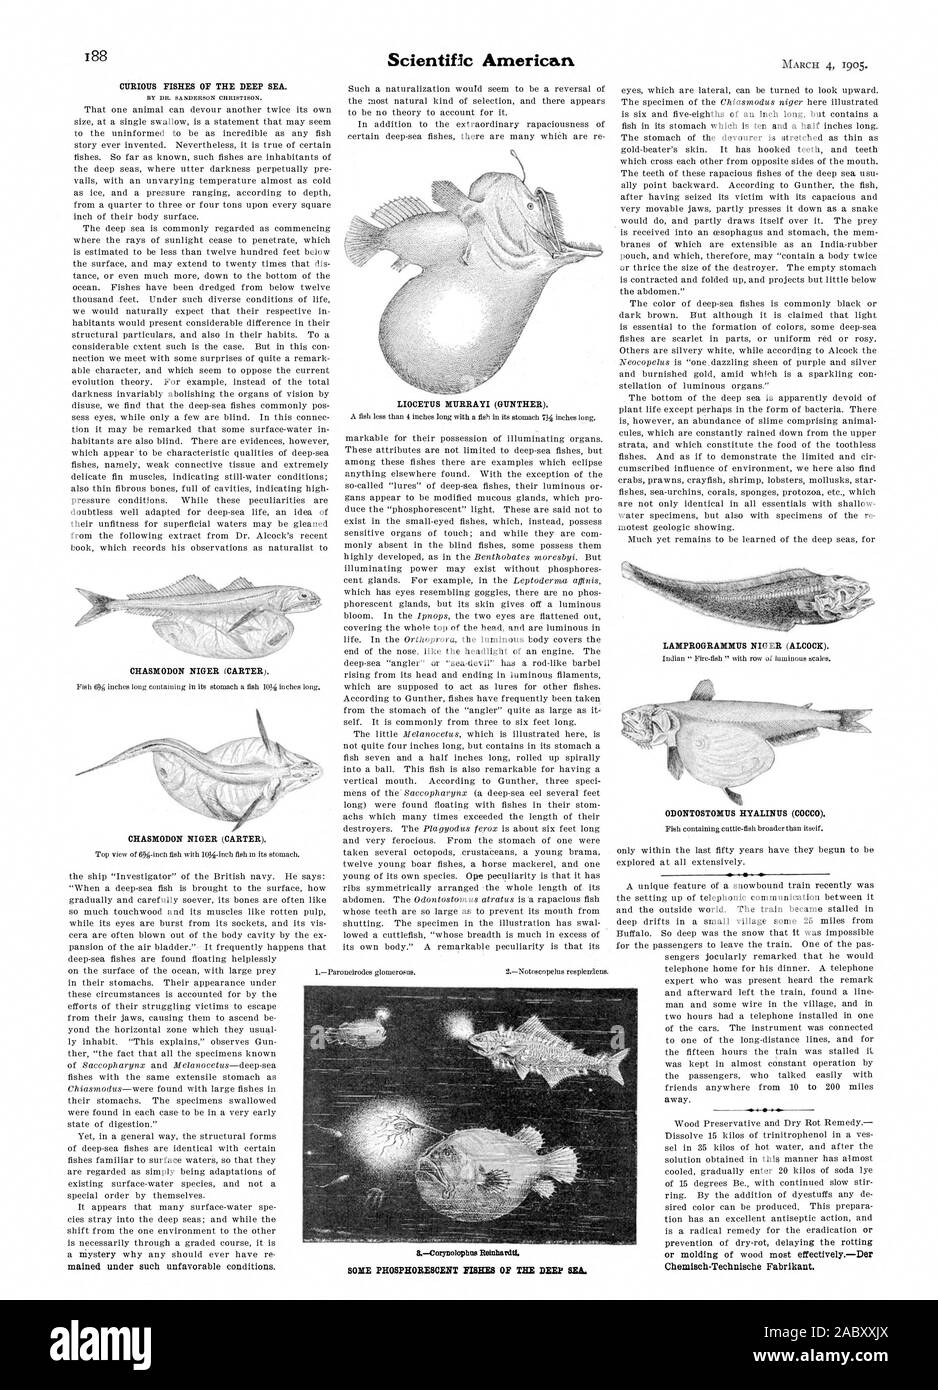 Chemisch-Technische Fabrikant. Alcuni pesci fosforescenti del mare profondo., Scientific American, 1905-03-11 Foto Stock